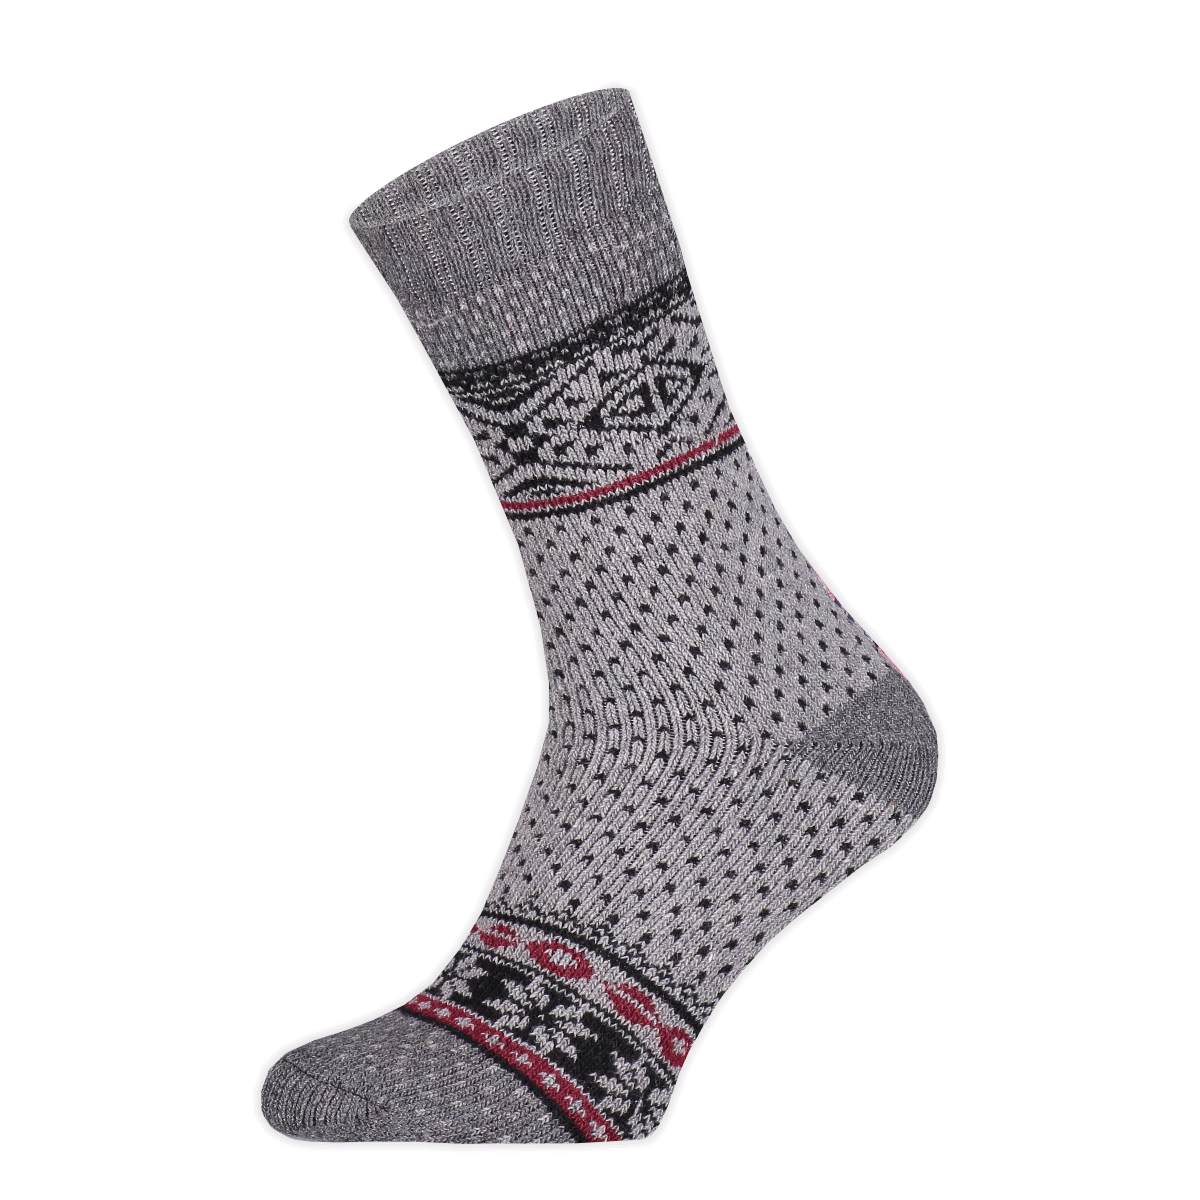 Basset - Heren - Wollen Nordic Socks - Herensokken - Winter - 45% Wol - Maat 39/42 - Grijs